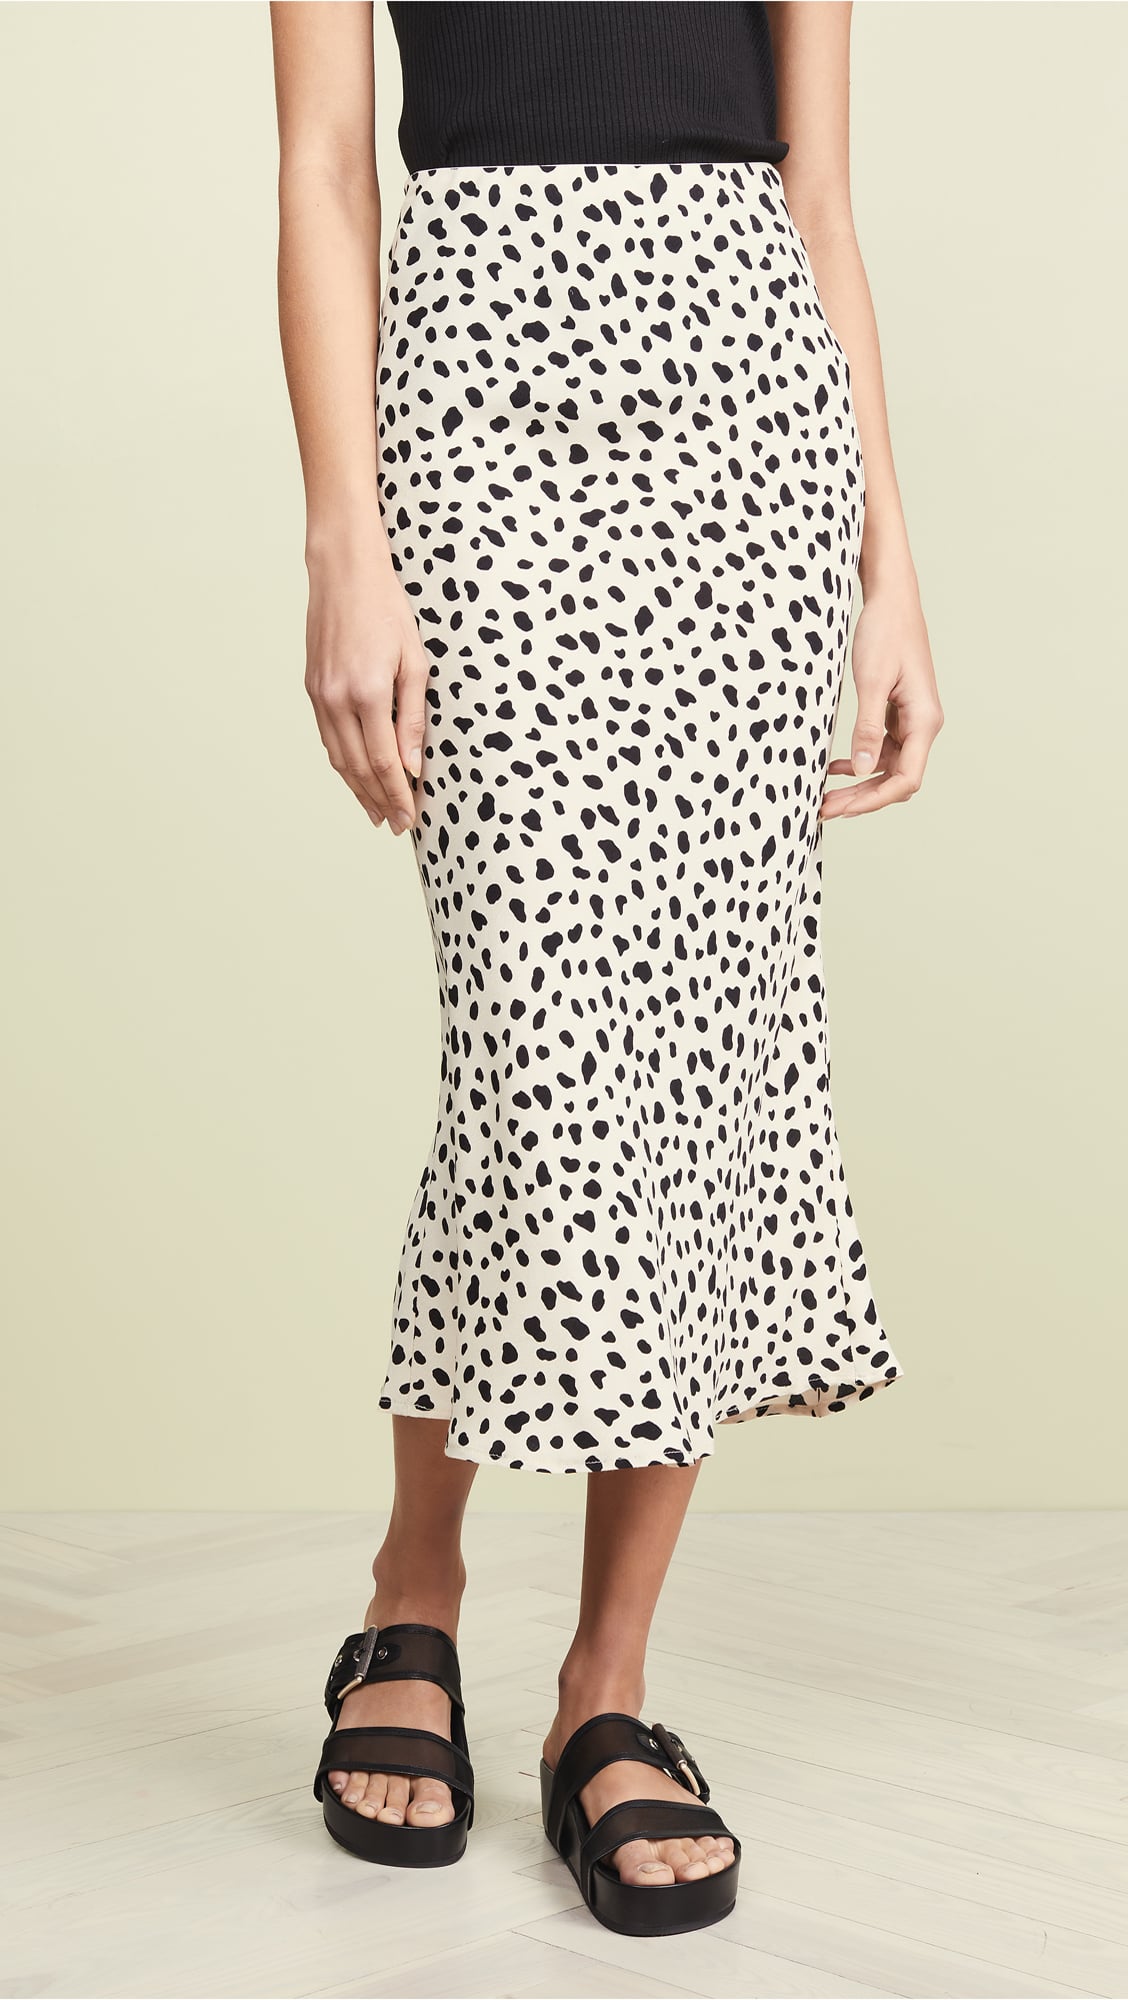 slip skirt leopard print